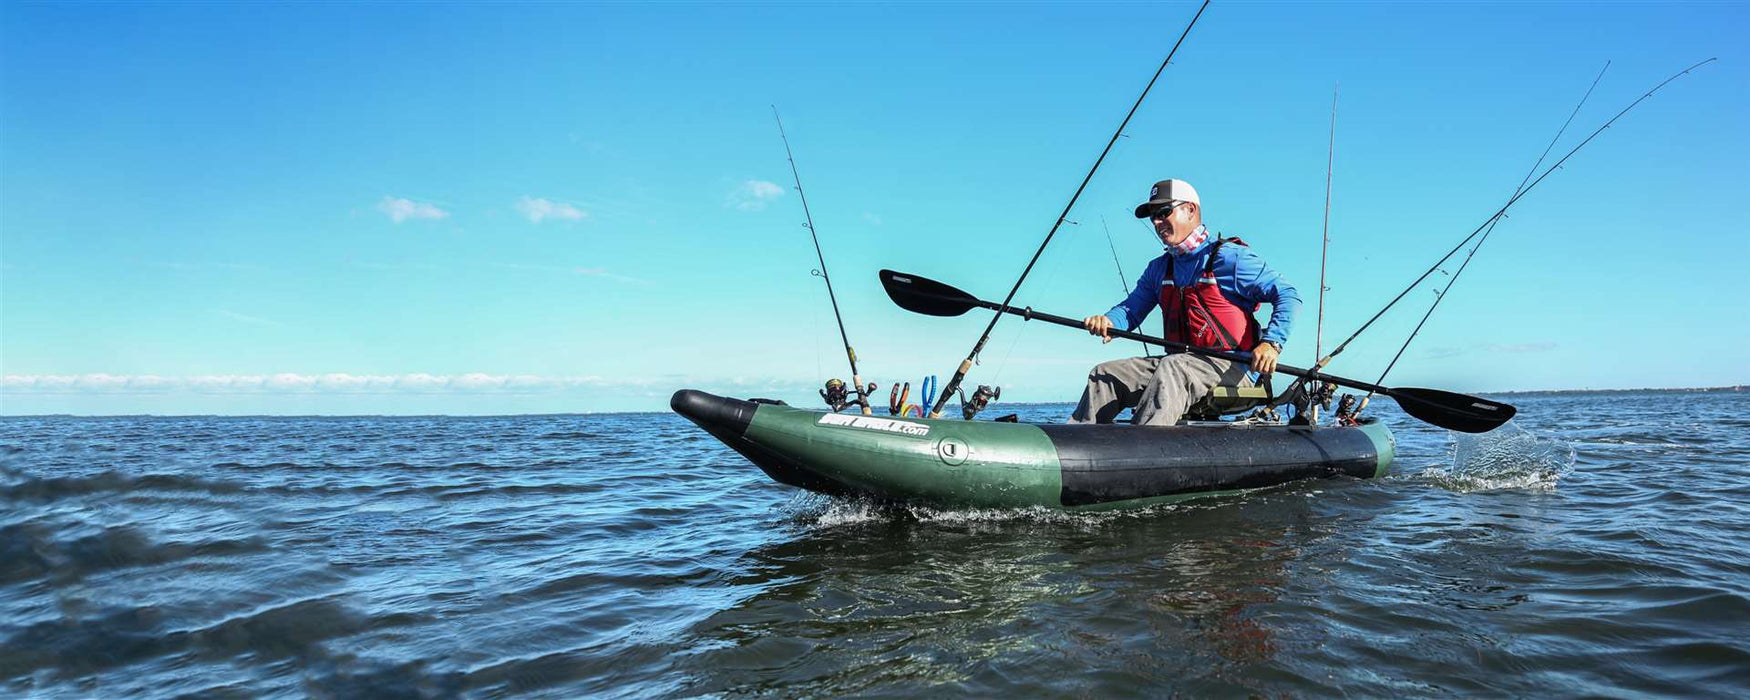 Sea Eagle 350fx Fishing Explorer Inflatable Fishing Kayak Inflatable Fishing Kayaks Sea Eagle   